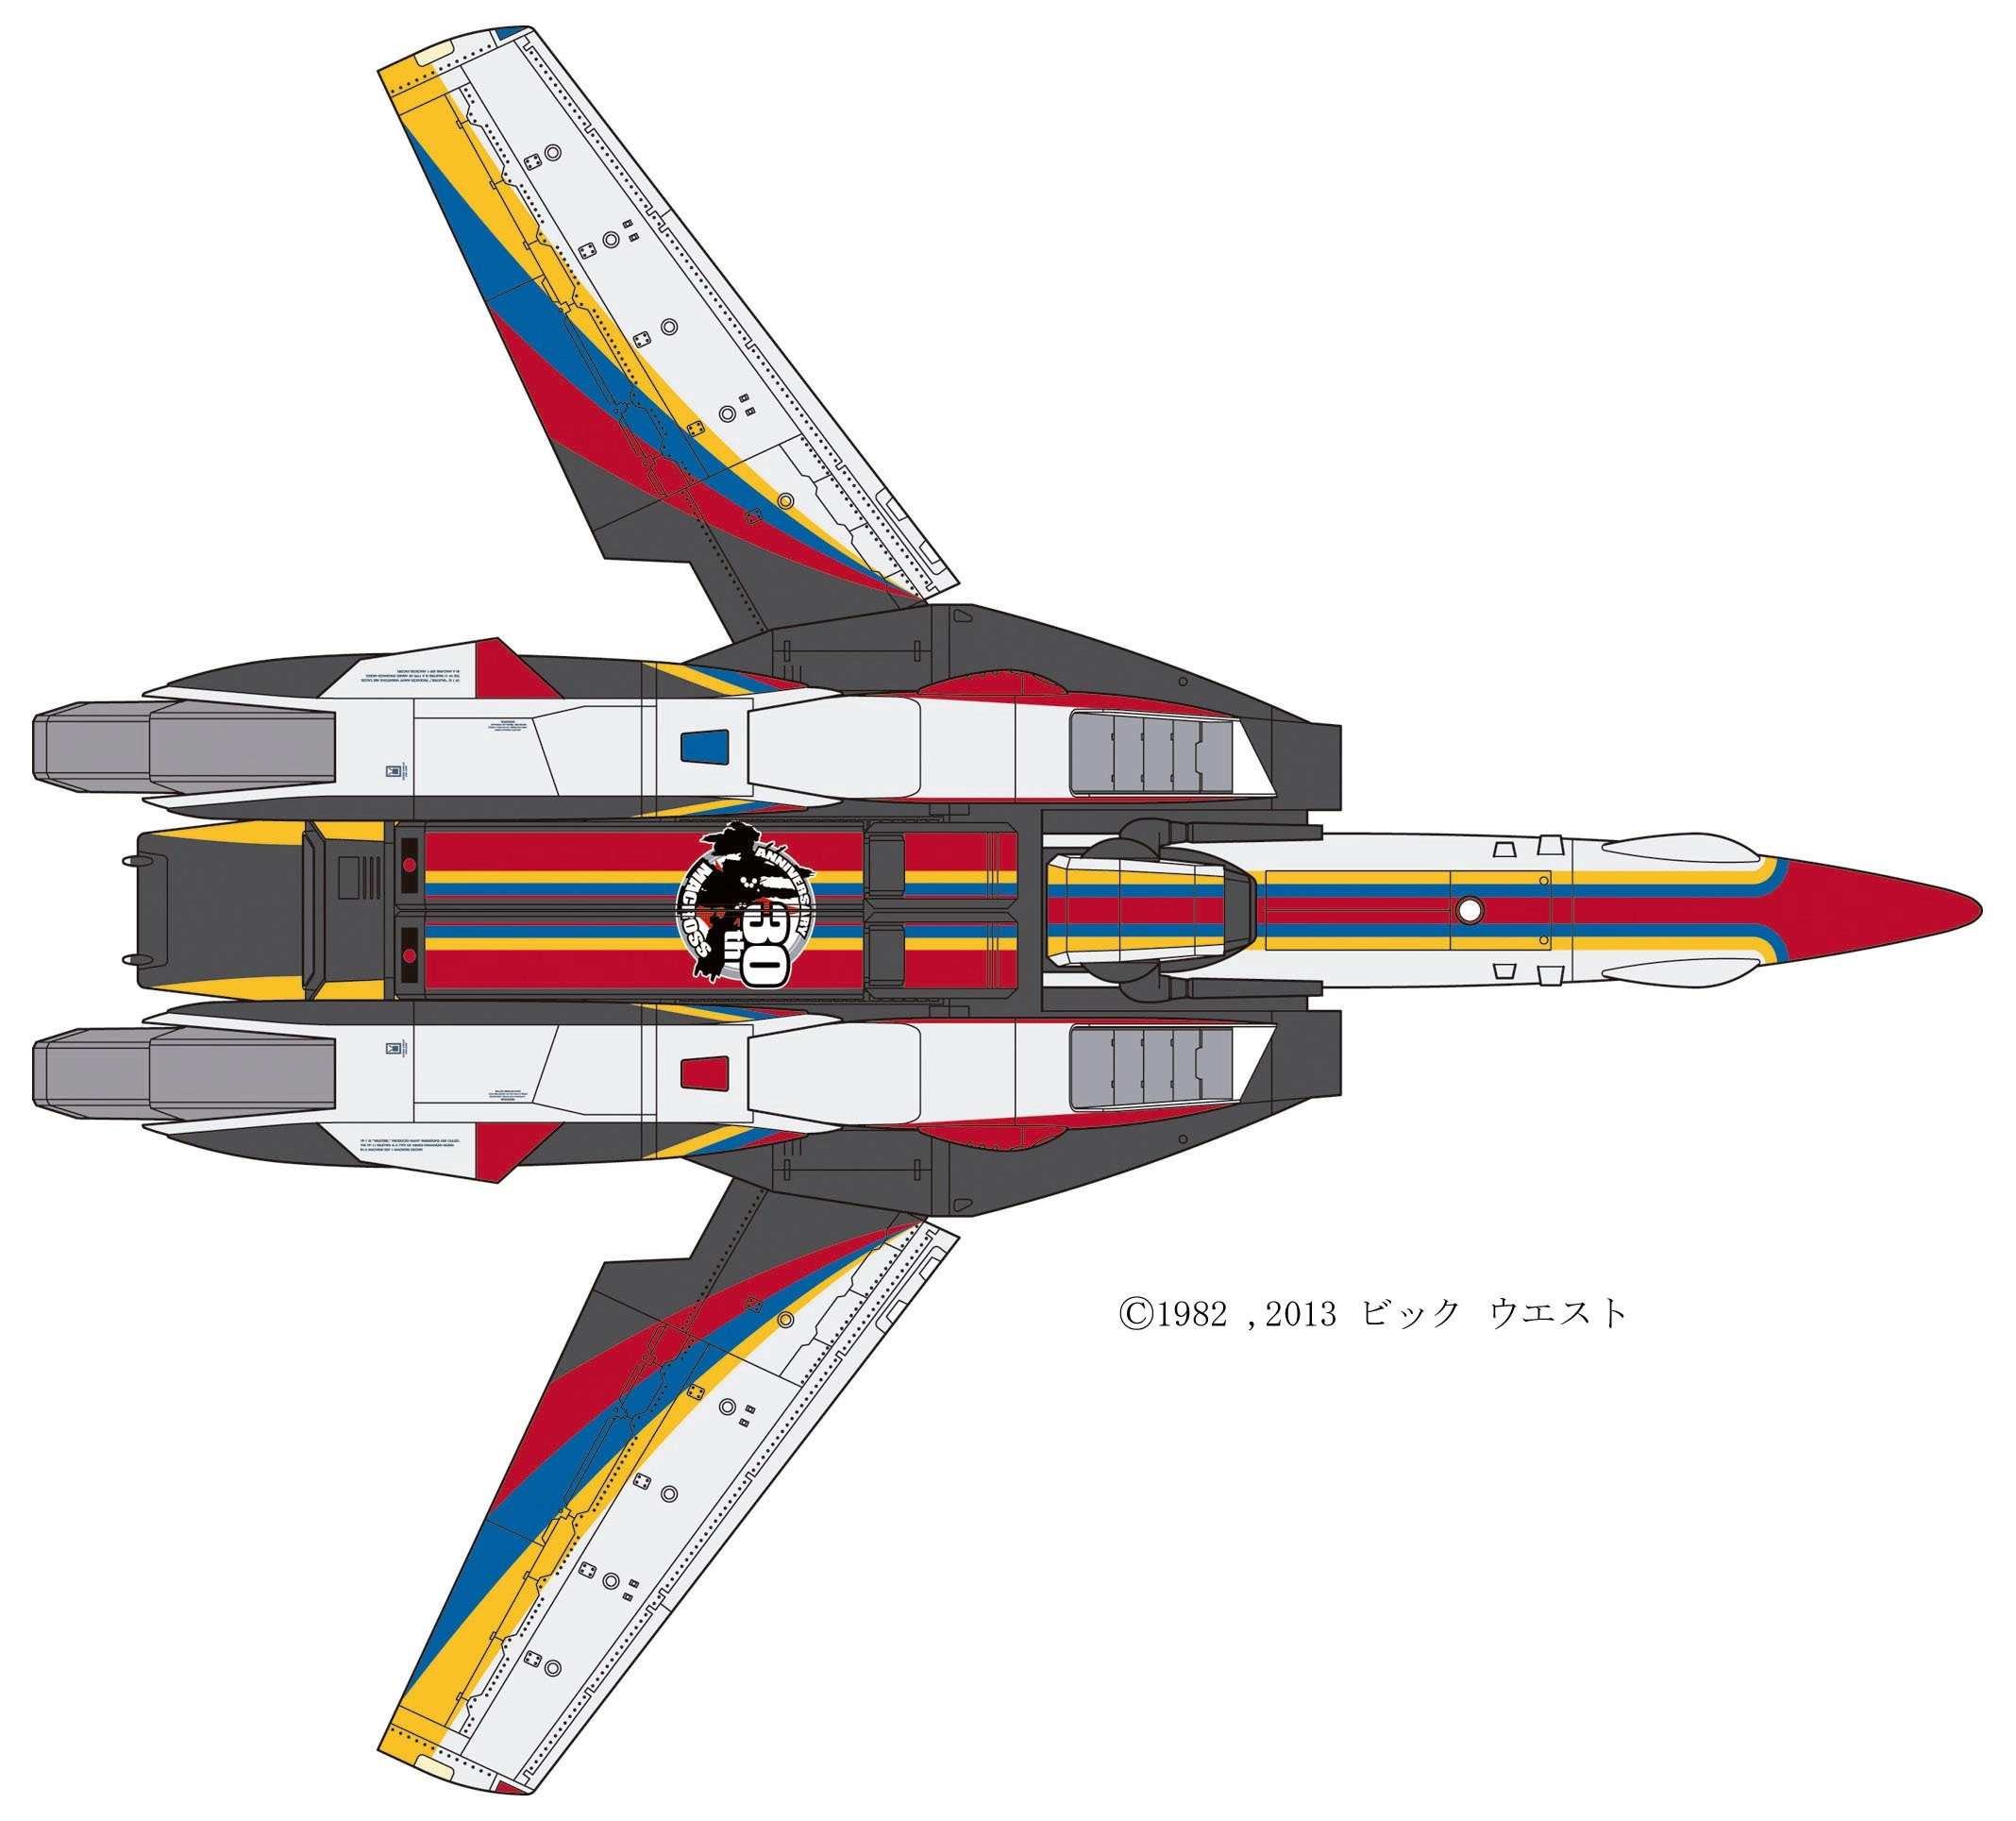 ふるいちオンライン - 1/72 VF-1J バルキリー 'マクロス30周年塗装機' 「超時空要塞マクロス」 限定生産版